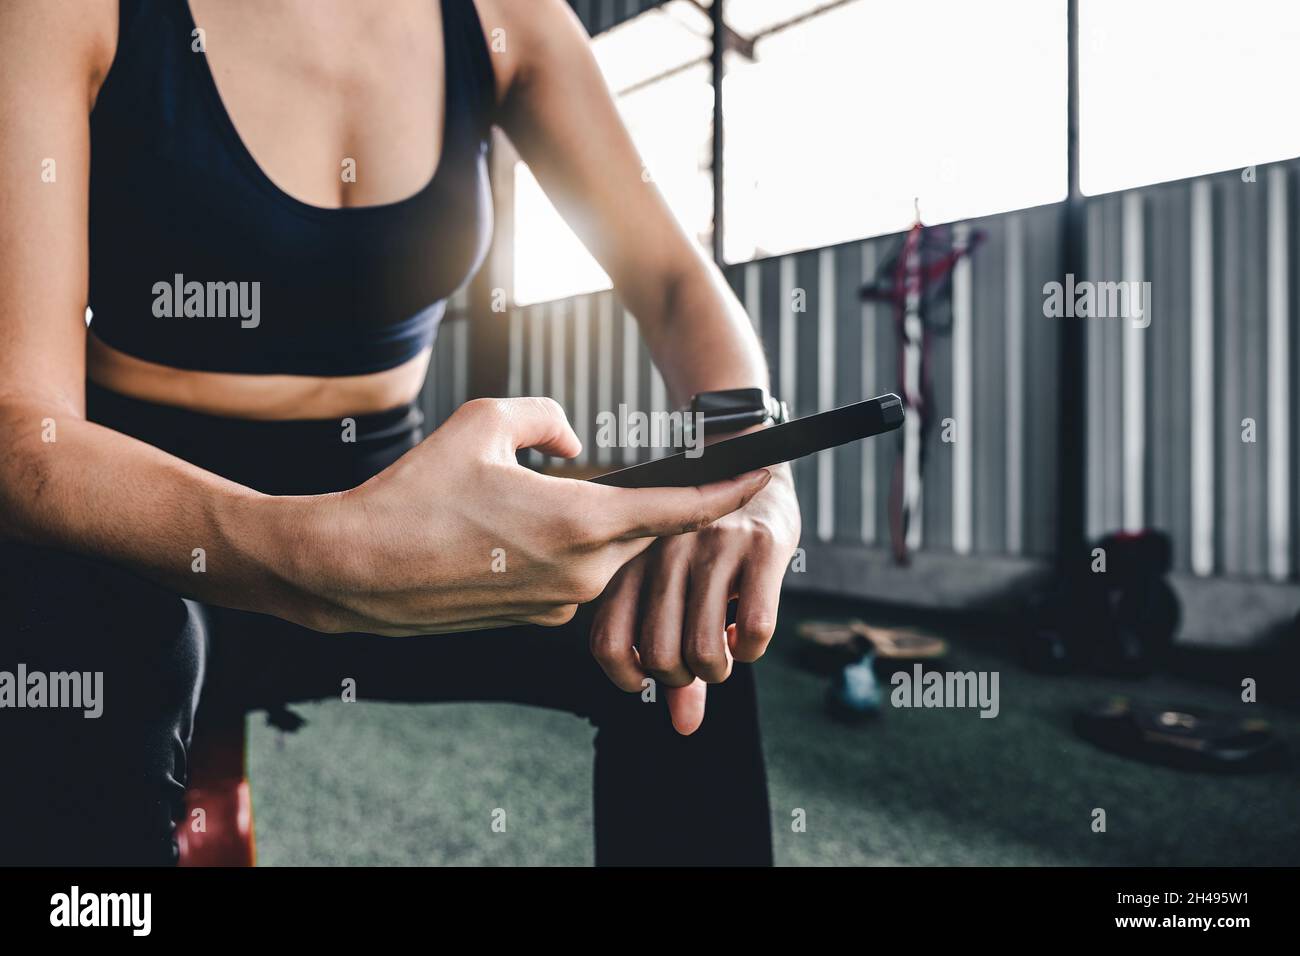 Donna sportiva che riposa dopo l'allenamento durante l'uso dell'app per smartphone smartwatch Connect. Sfondo palestra interna. Concetto di sport di salute. Foto Stock